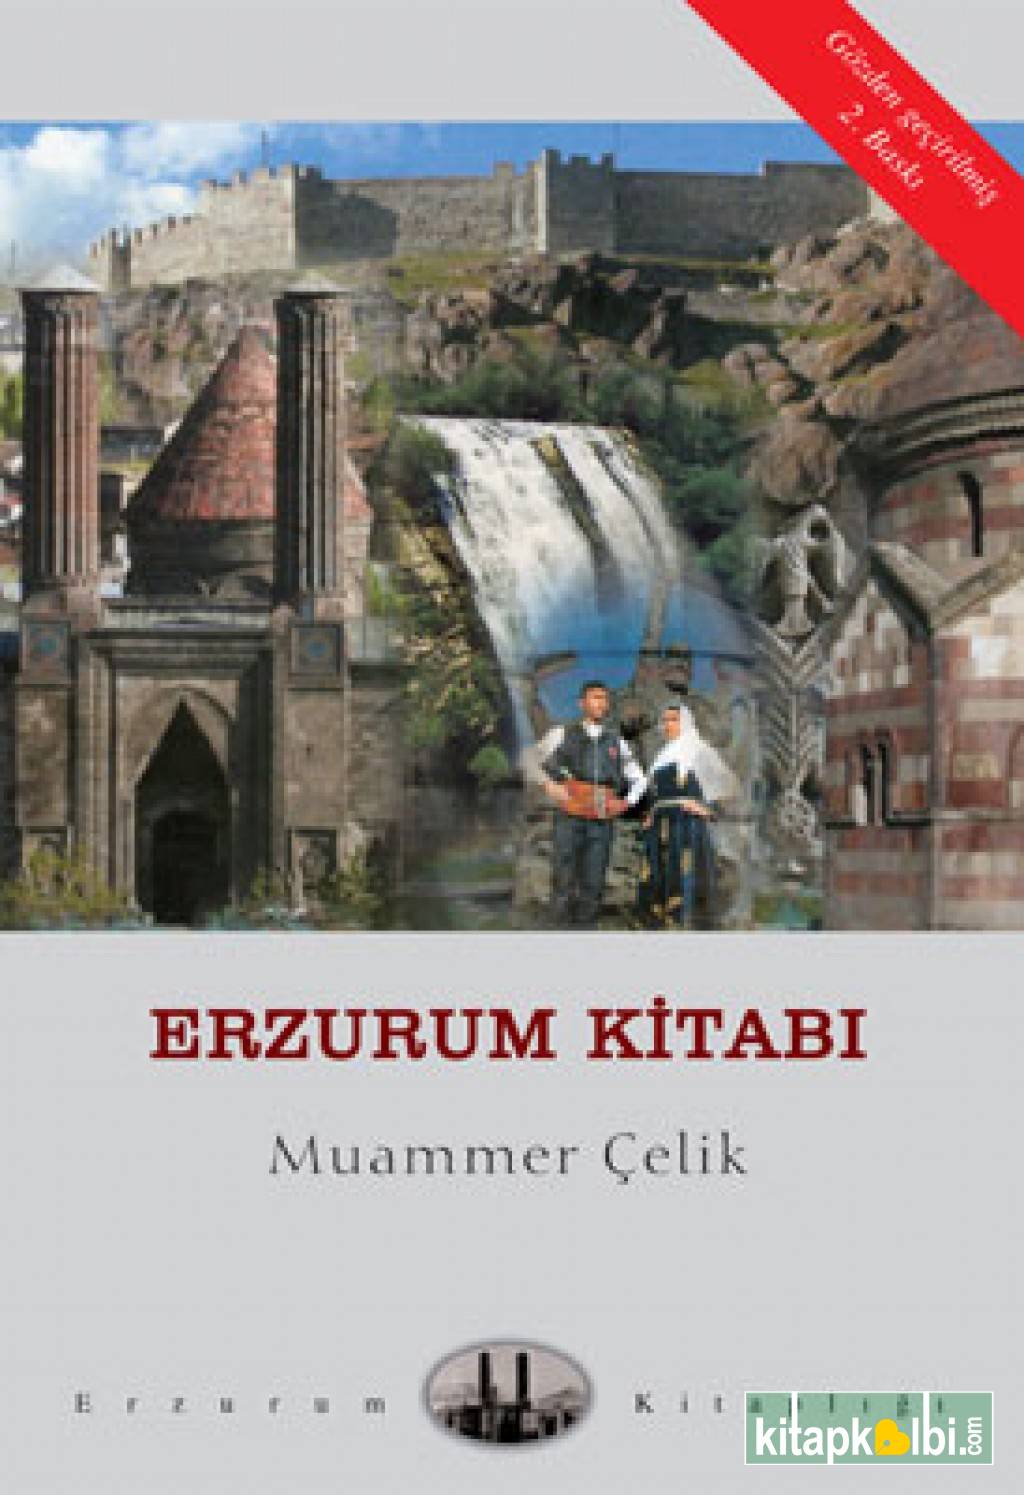 Erzurum Kitabı